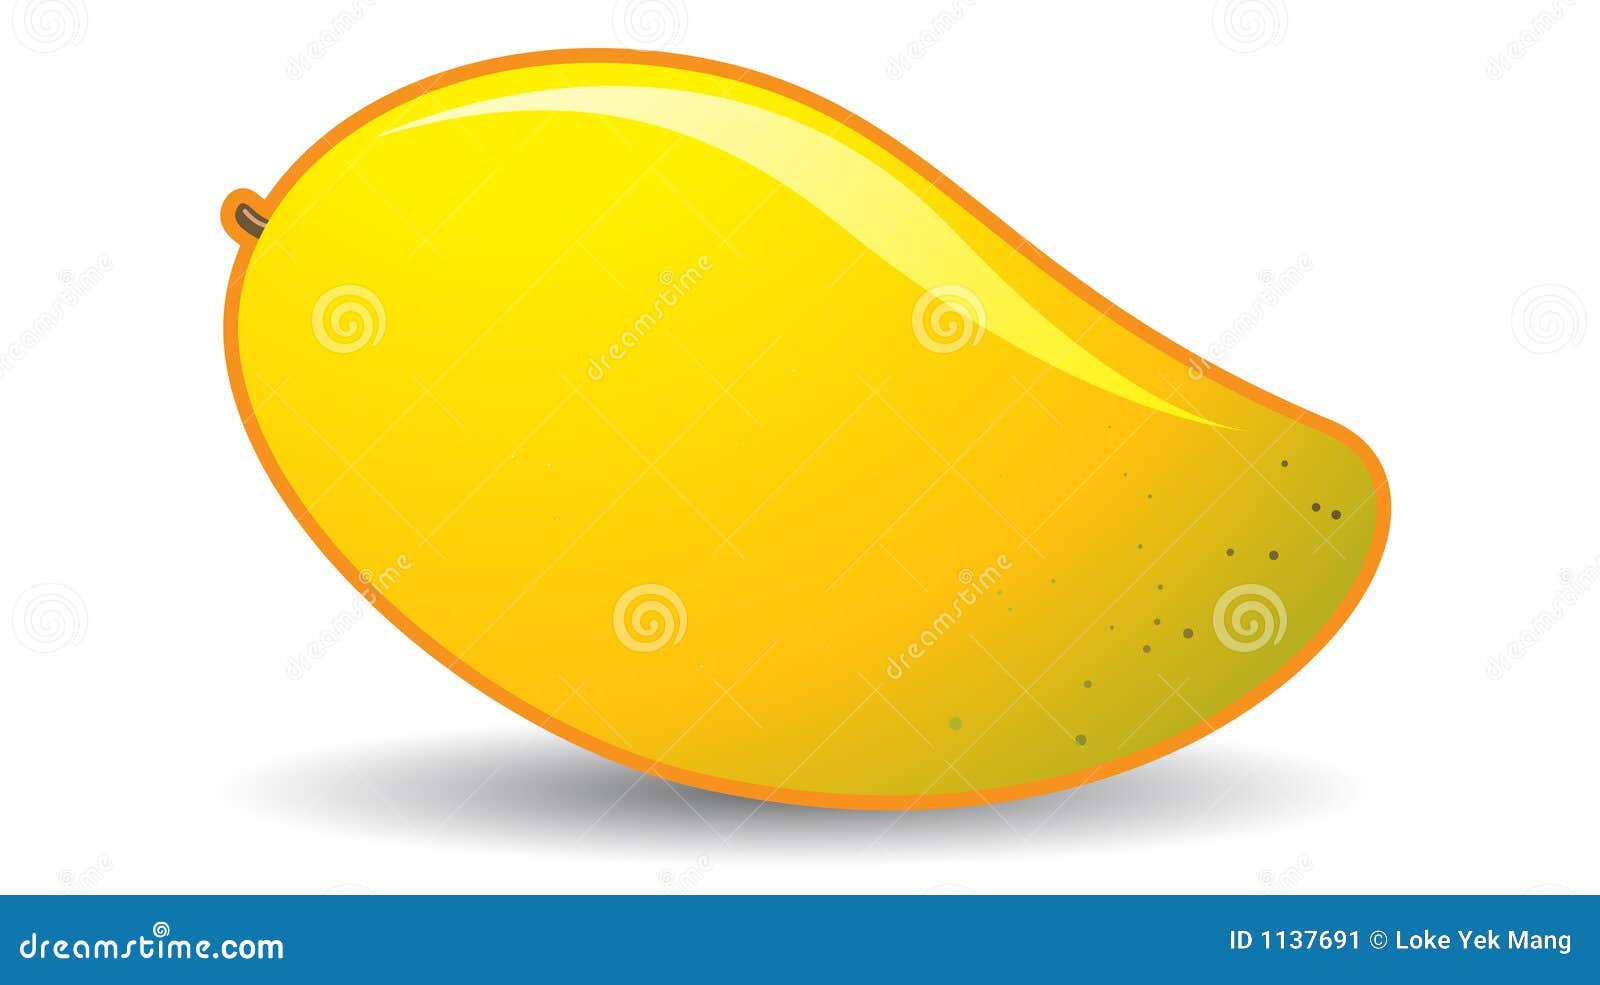 cliparts mango - photo #49